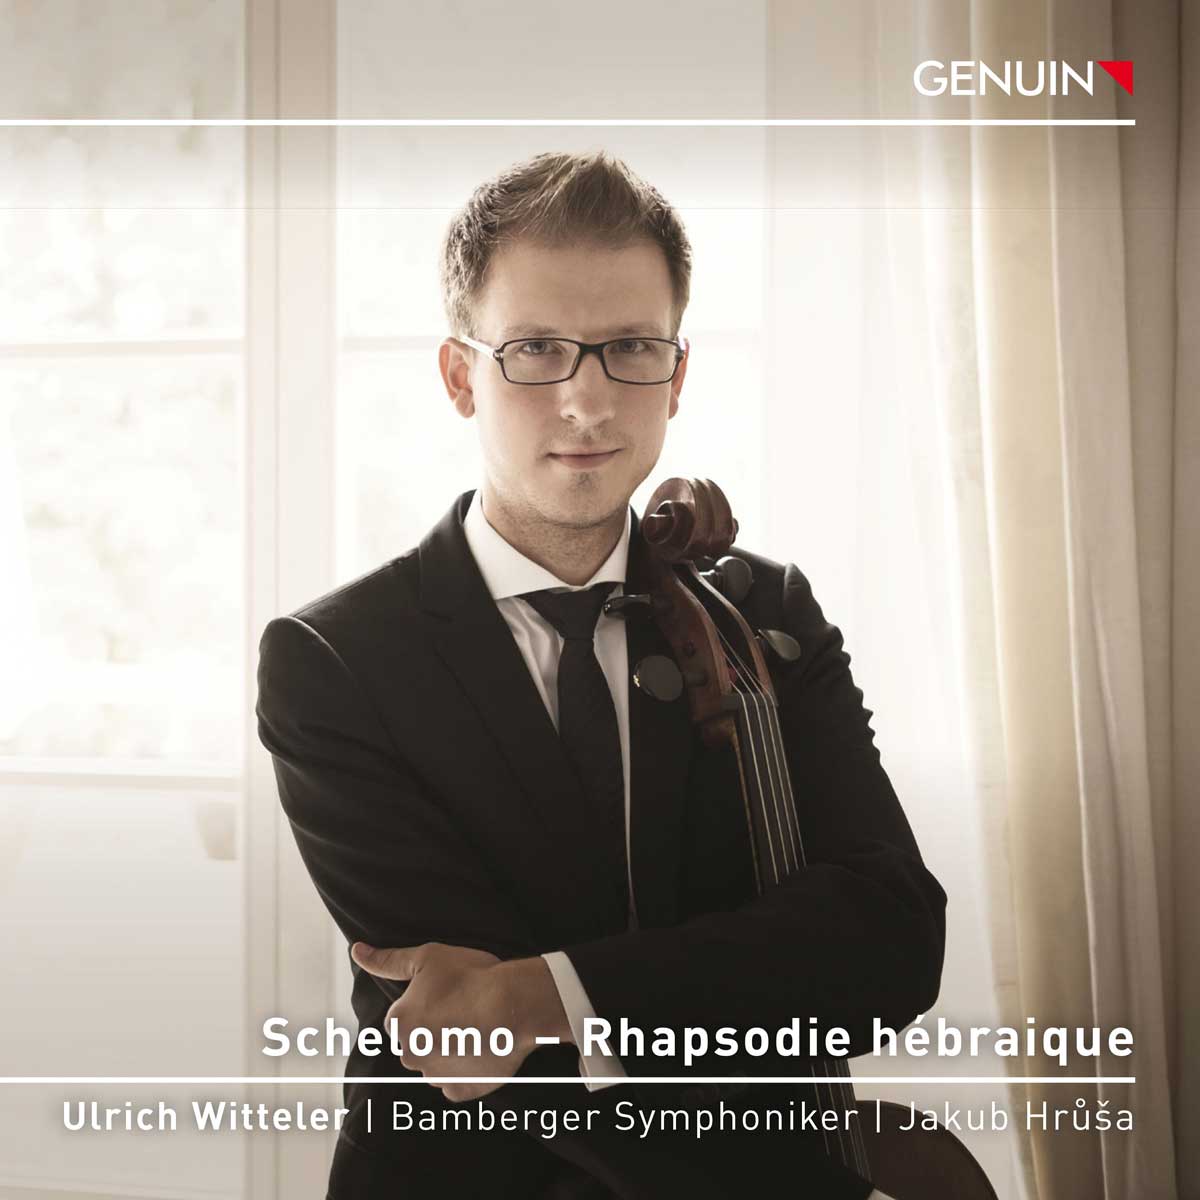 CD album cover 'Schelomo – Rhapsodie hébraique' (GEN 23843d) with Ulrich Witteler ...